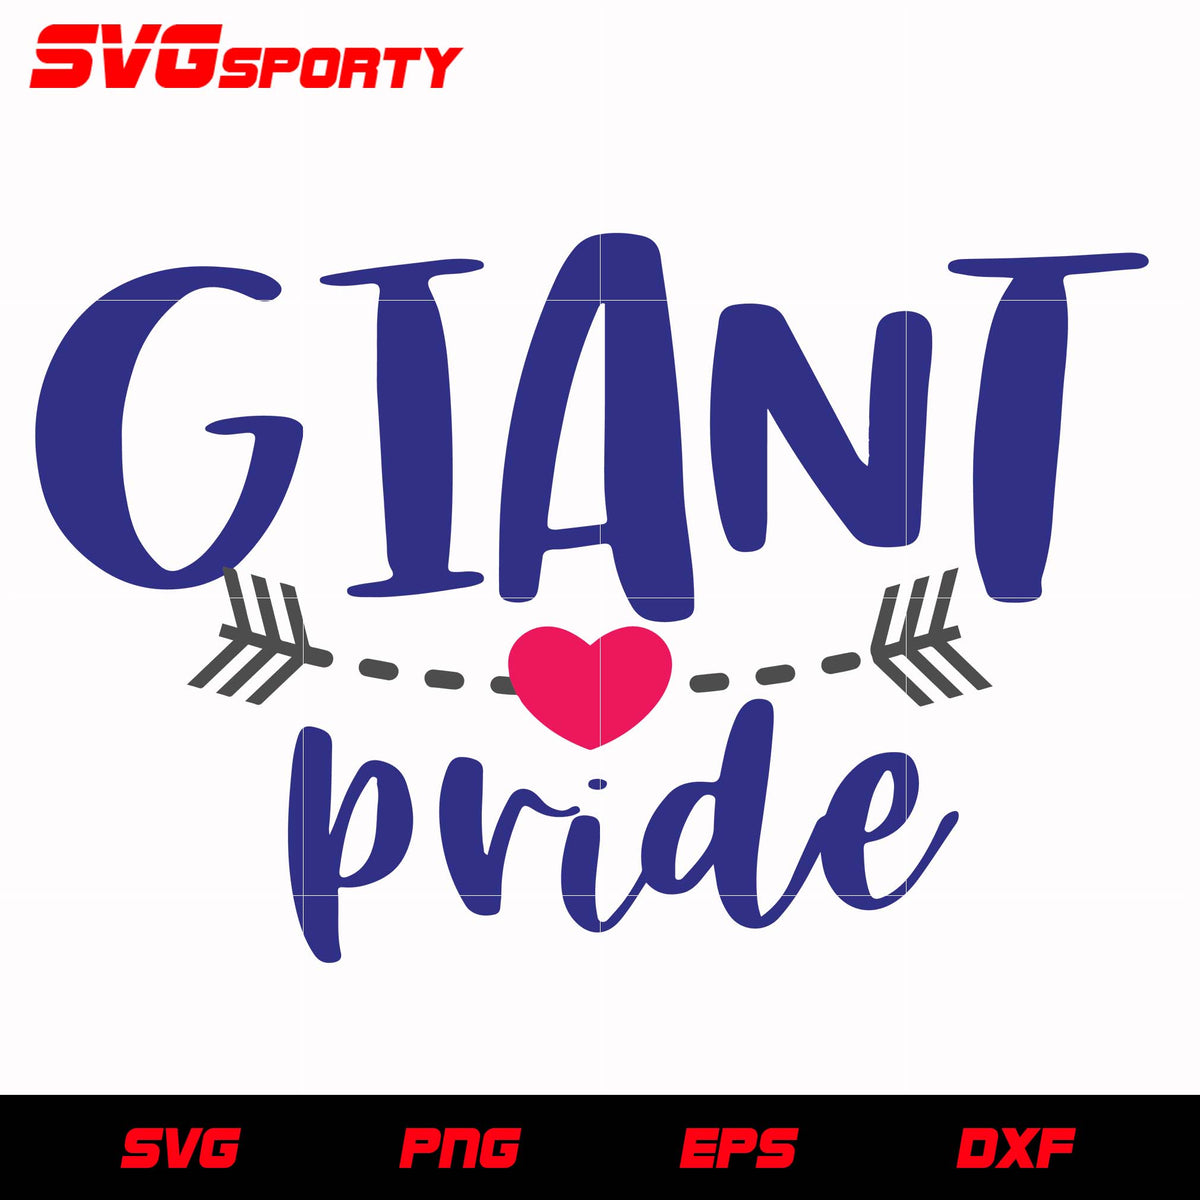 Giants Pride 